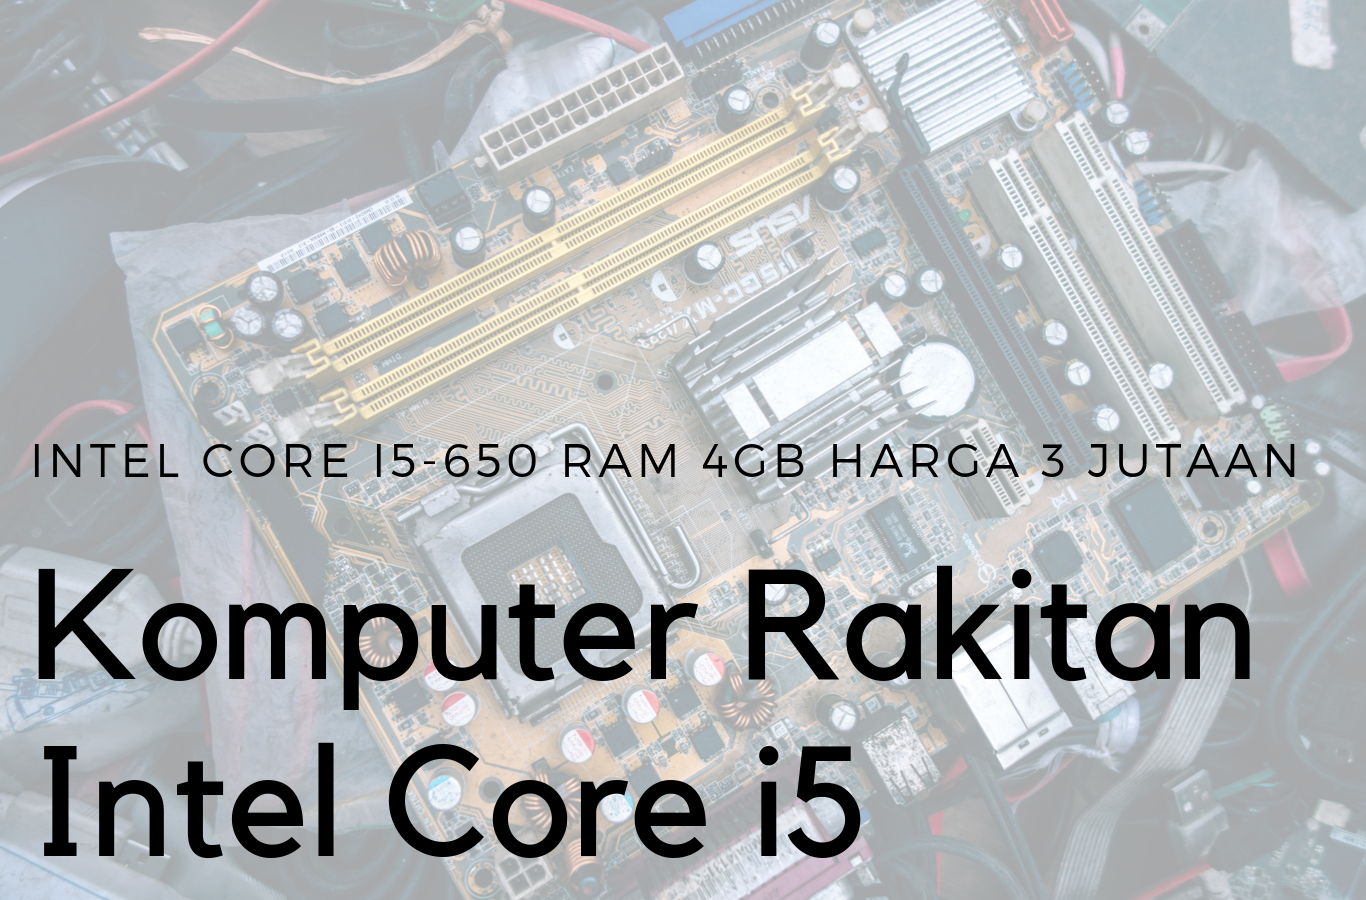 Komputer Rakitan Intel Core i5